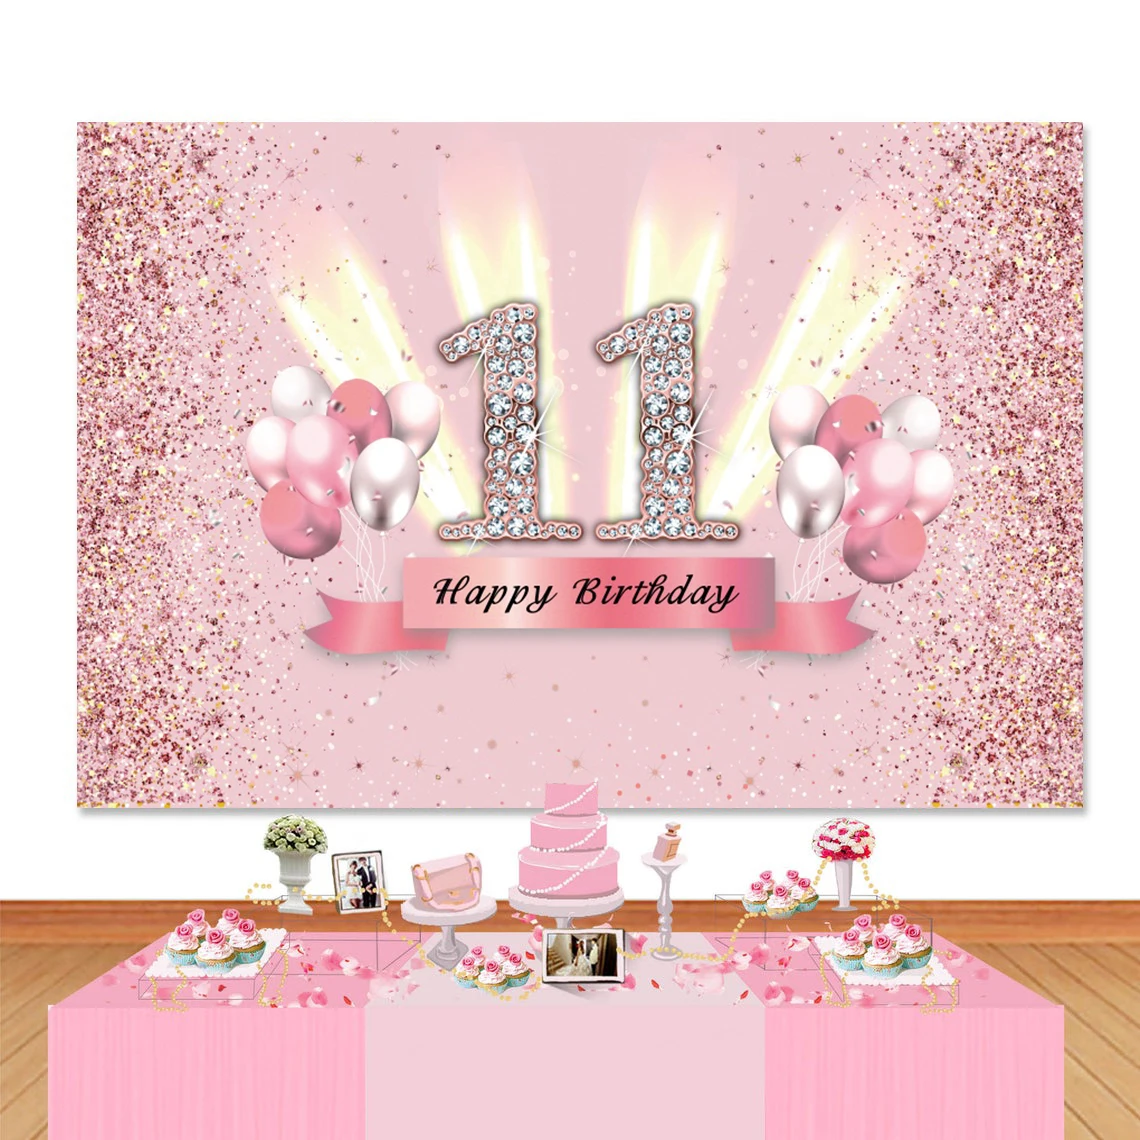  Decoraciones de cumpleaños número 11 para niñas, globos de  feliz cumpleaños rosa y blanco, suministros de fiesta de cumpleaños número  11 para hija, sus hijos, incluyendo pancarta rosa de feliz 